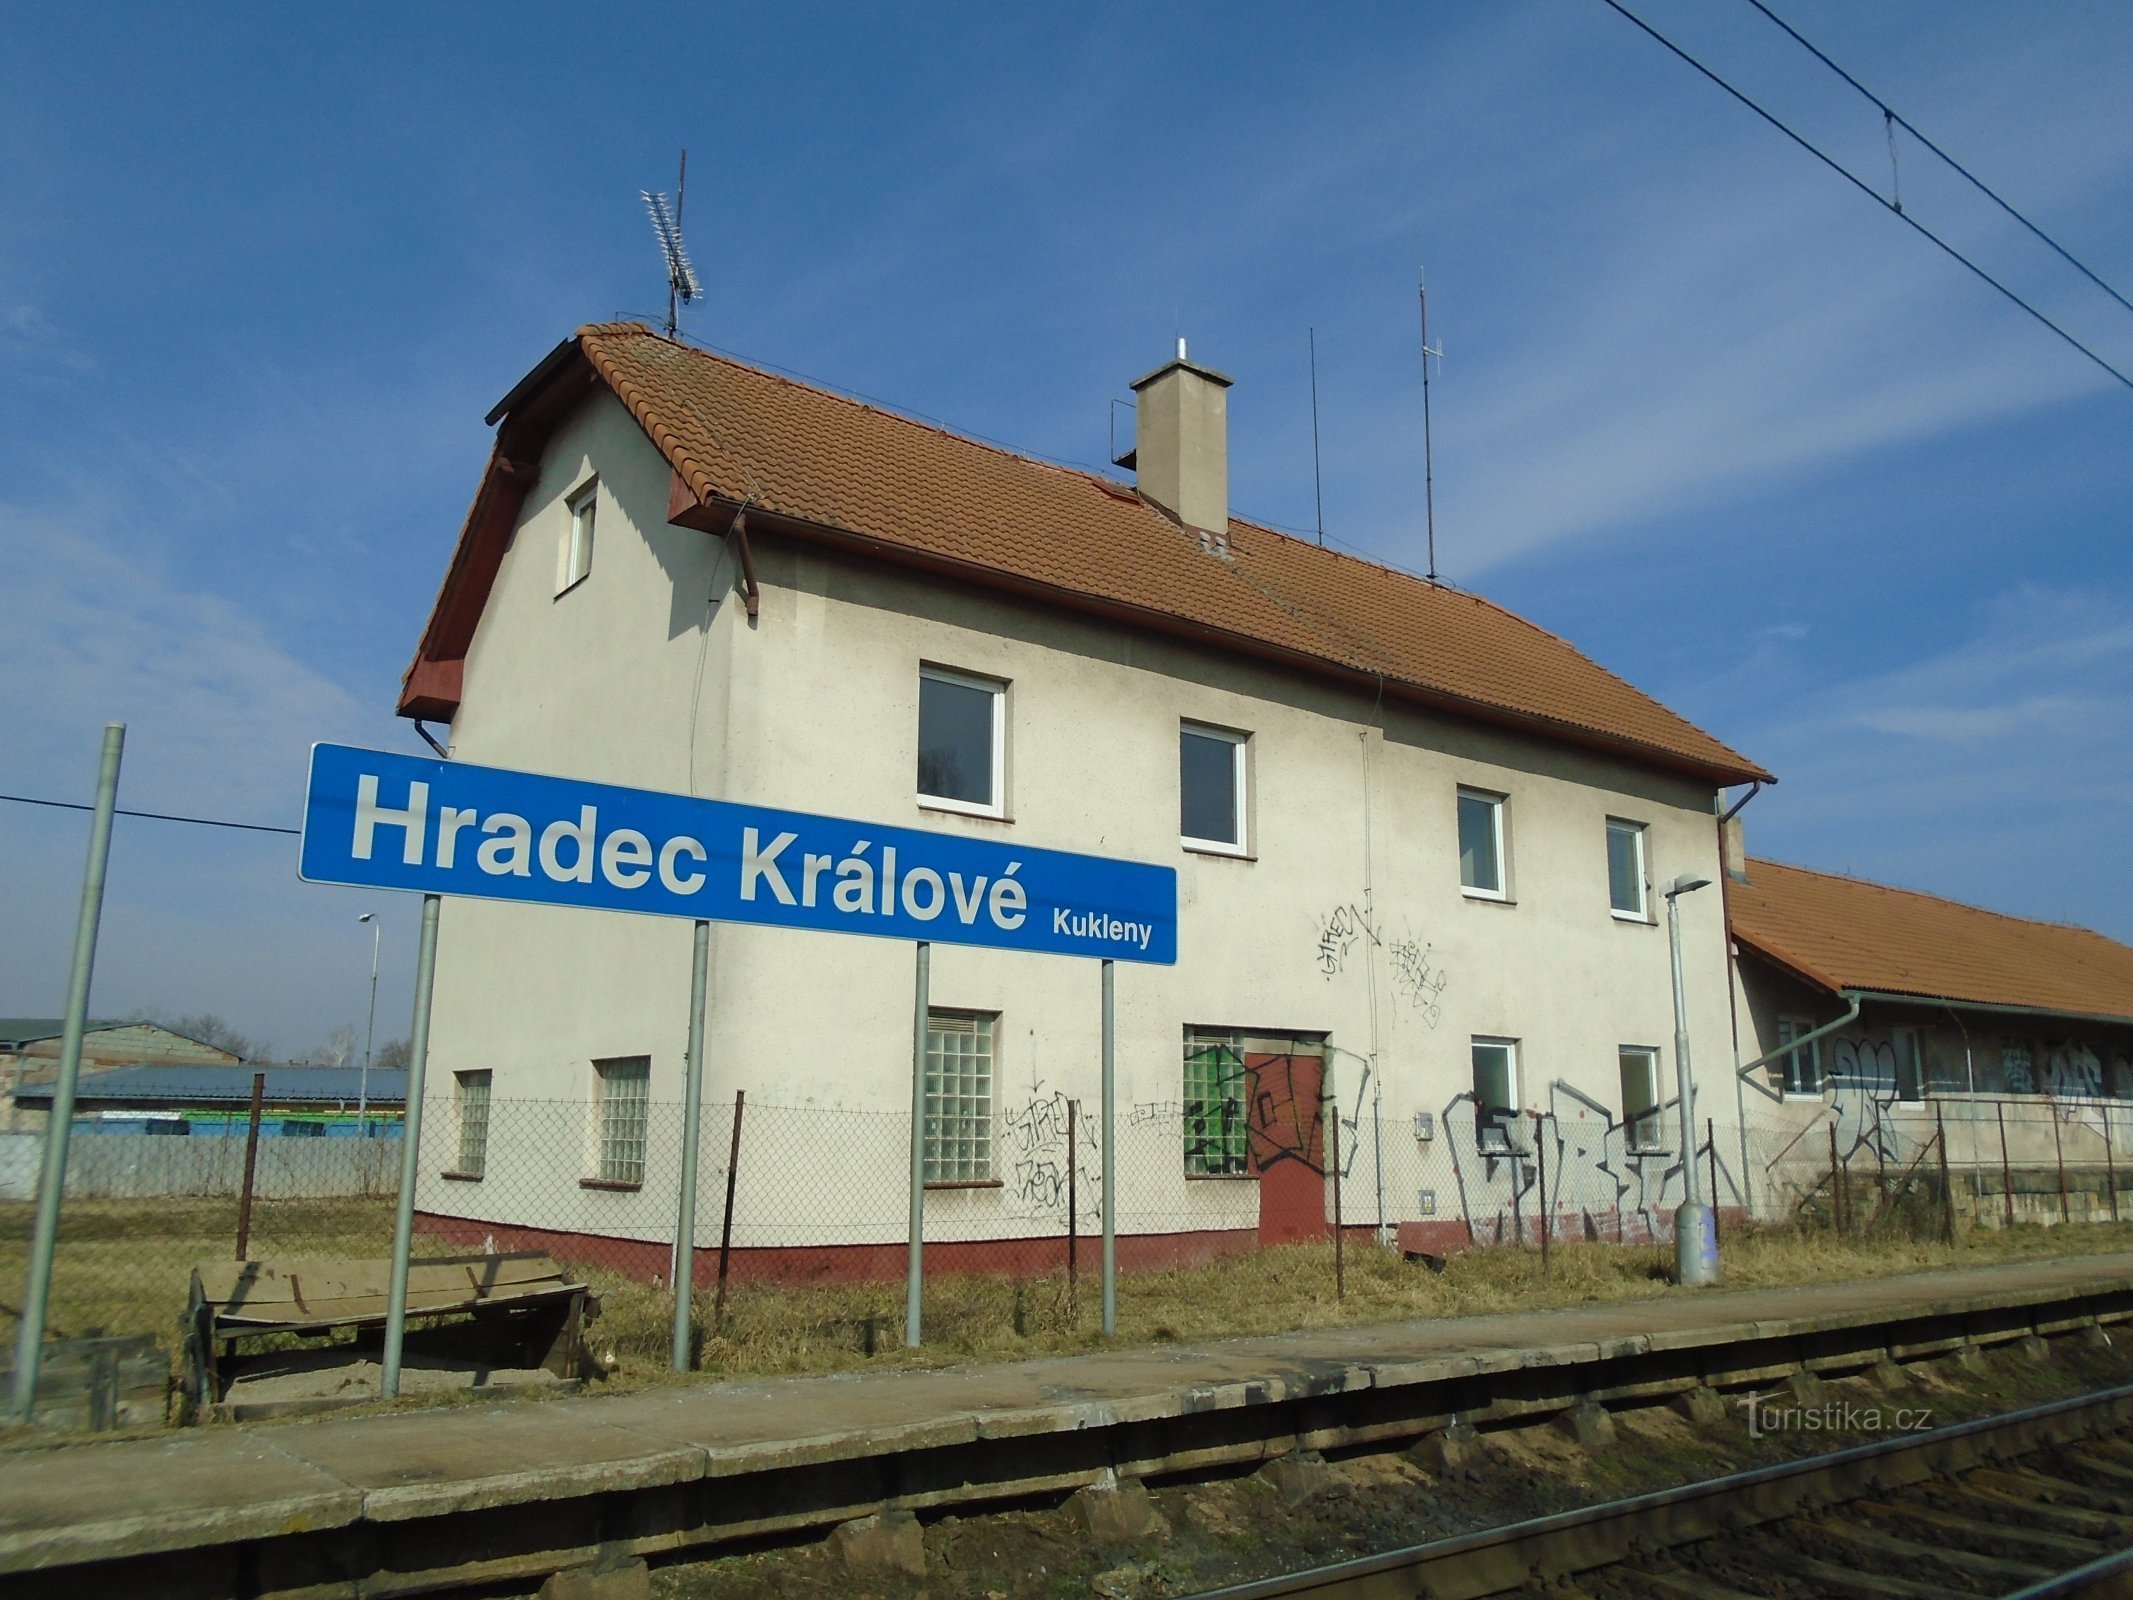 Ex stazione ferroviaria delle marionette (Hradec Králové)